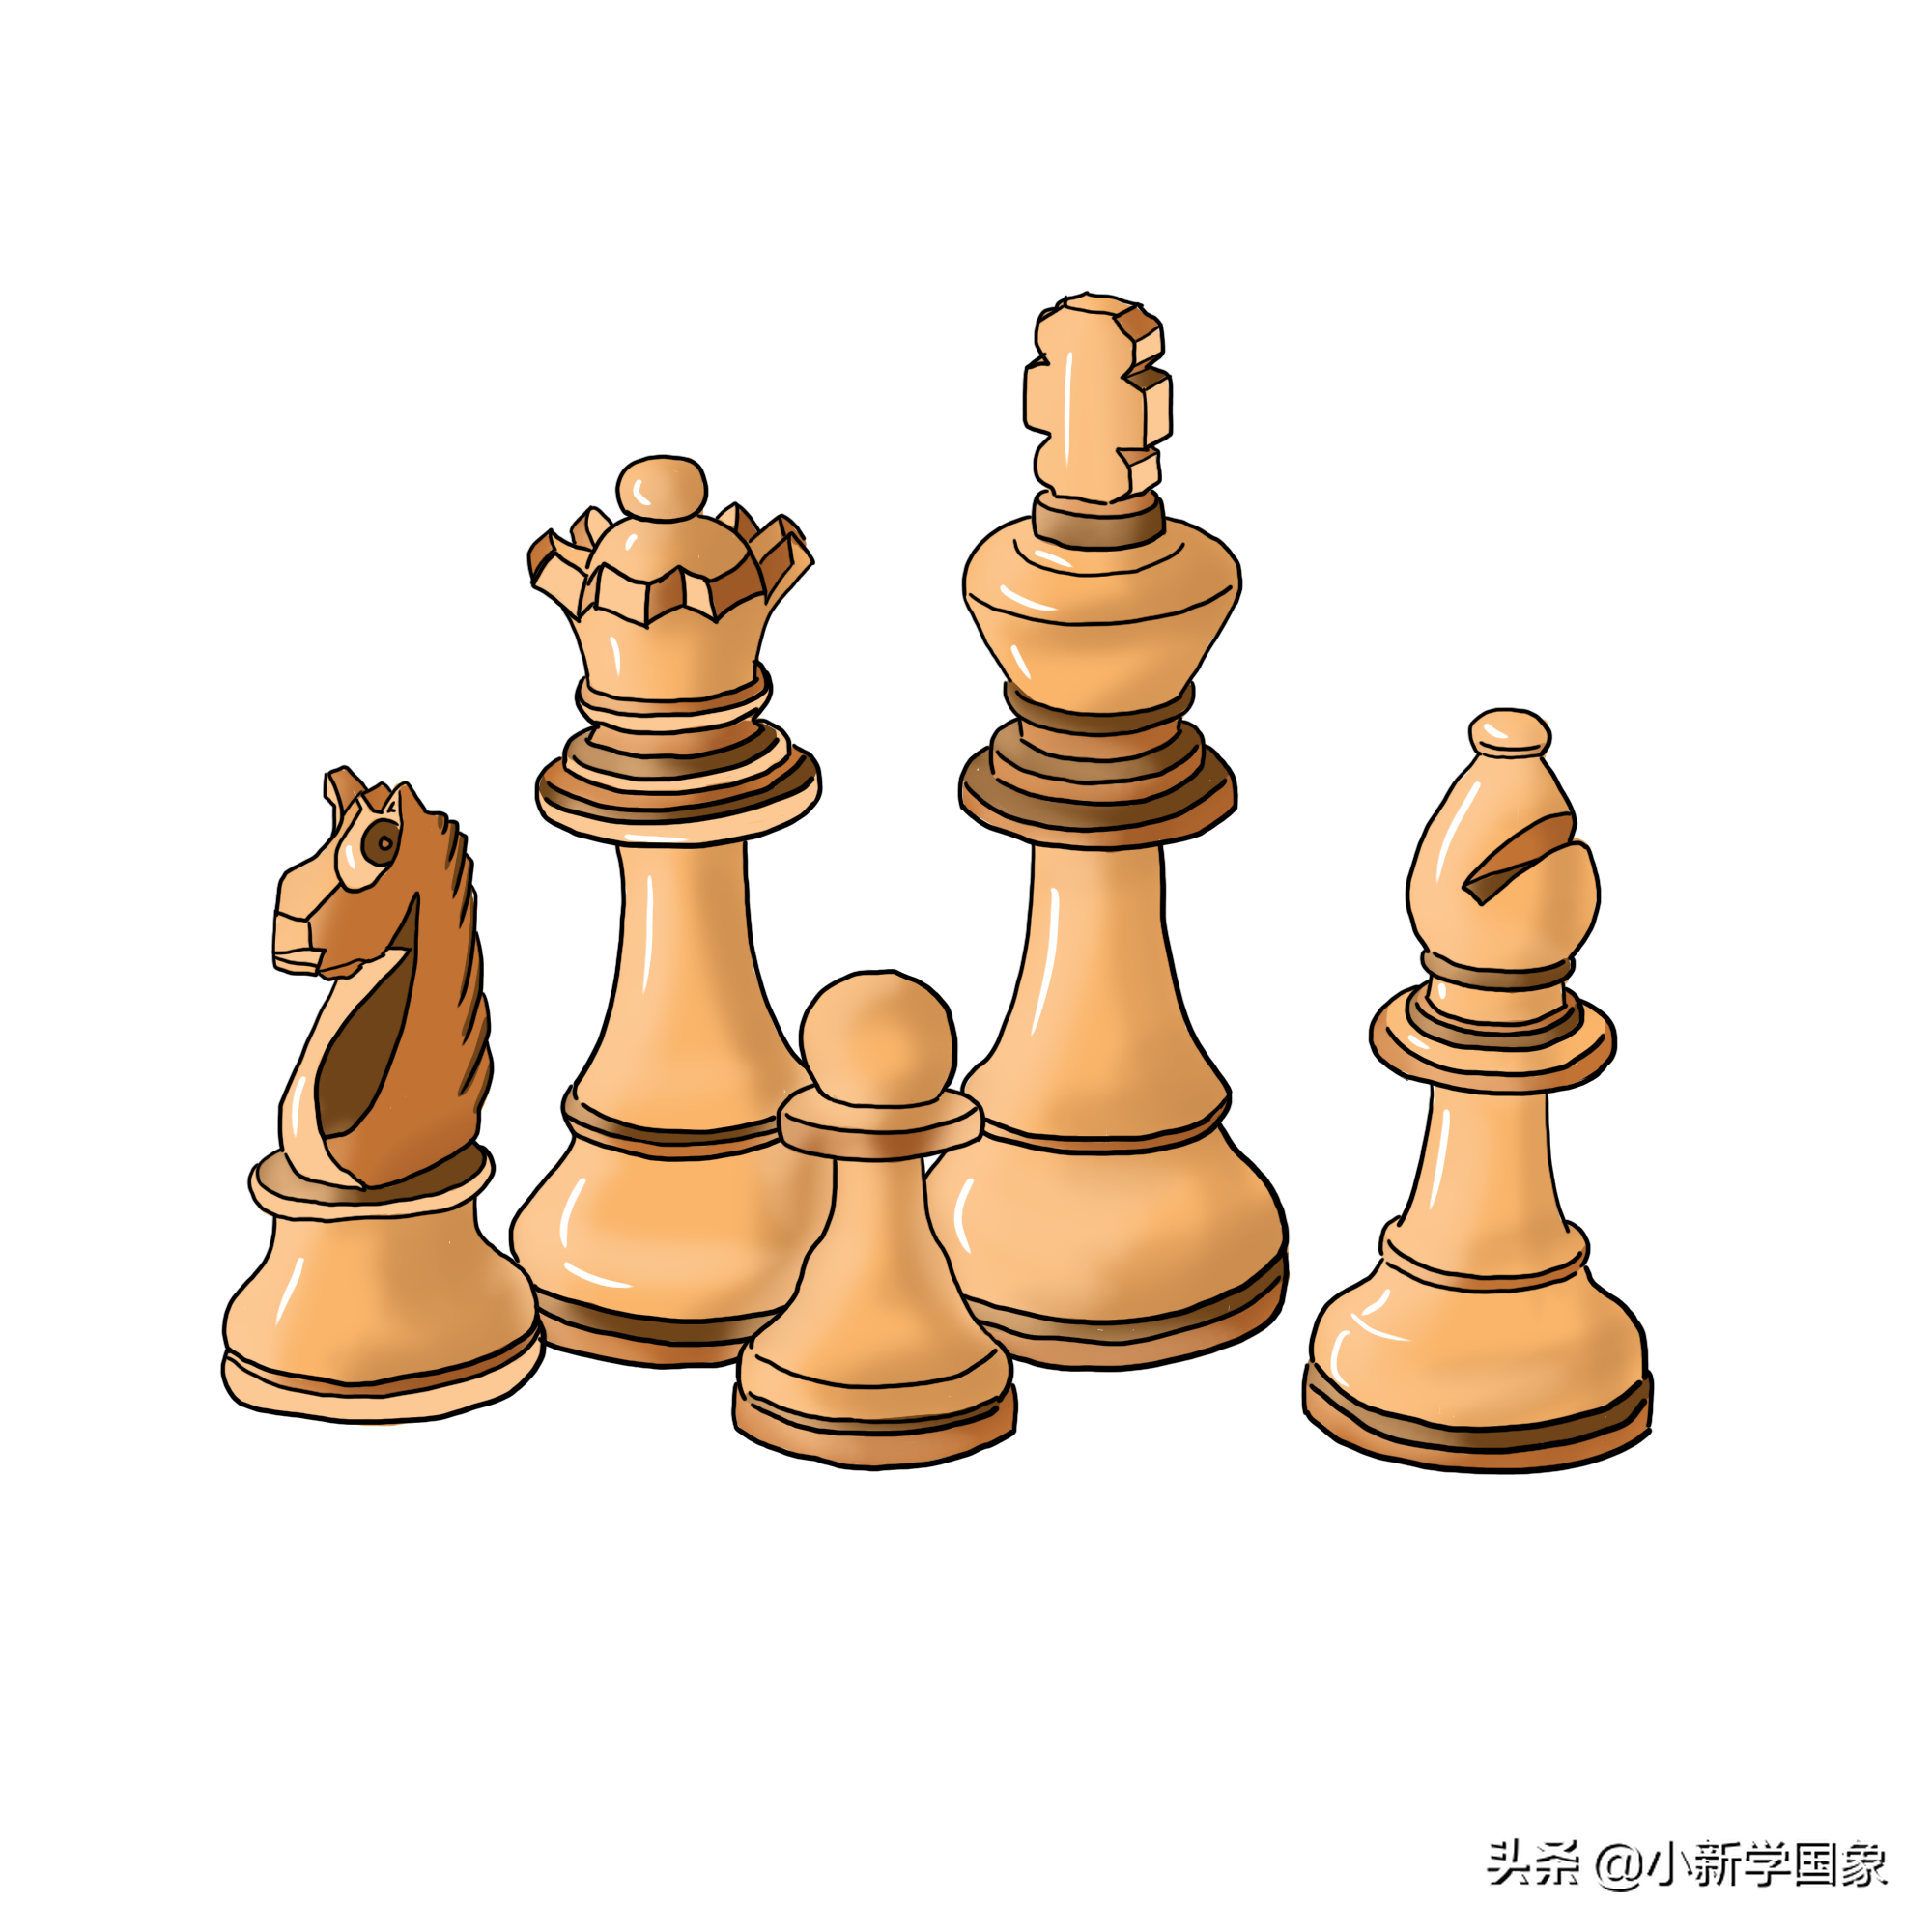 两个象棋的象的表情图片